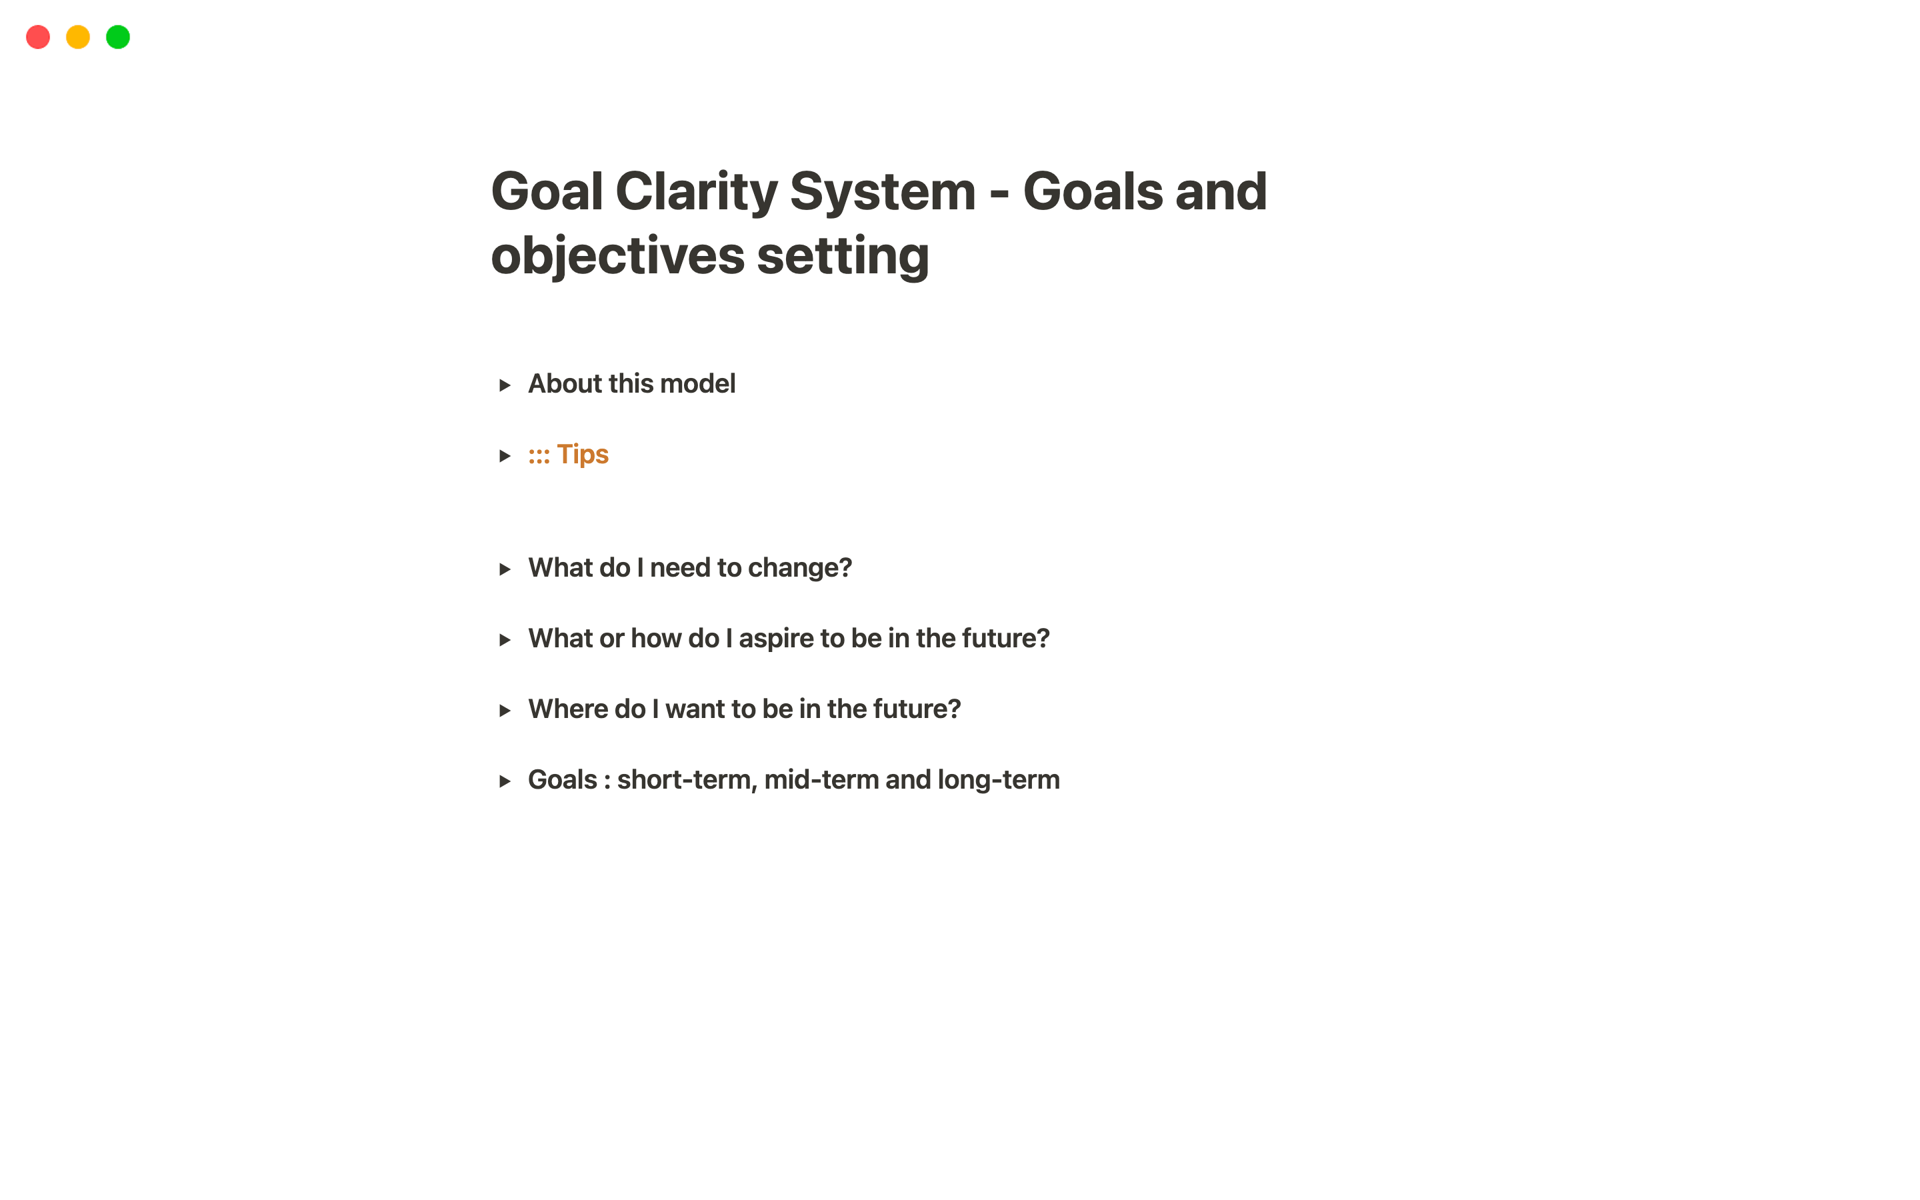 Vista previa de una plantilla para Goal Clarity System - Goals and objectives setting